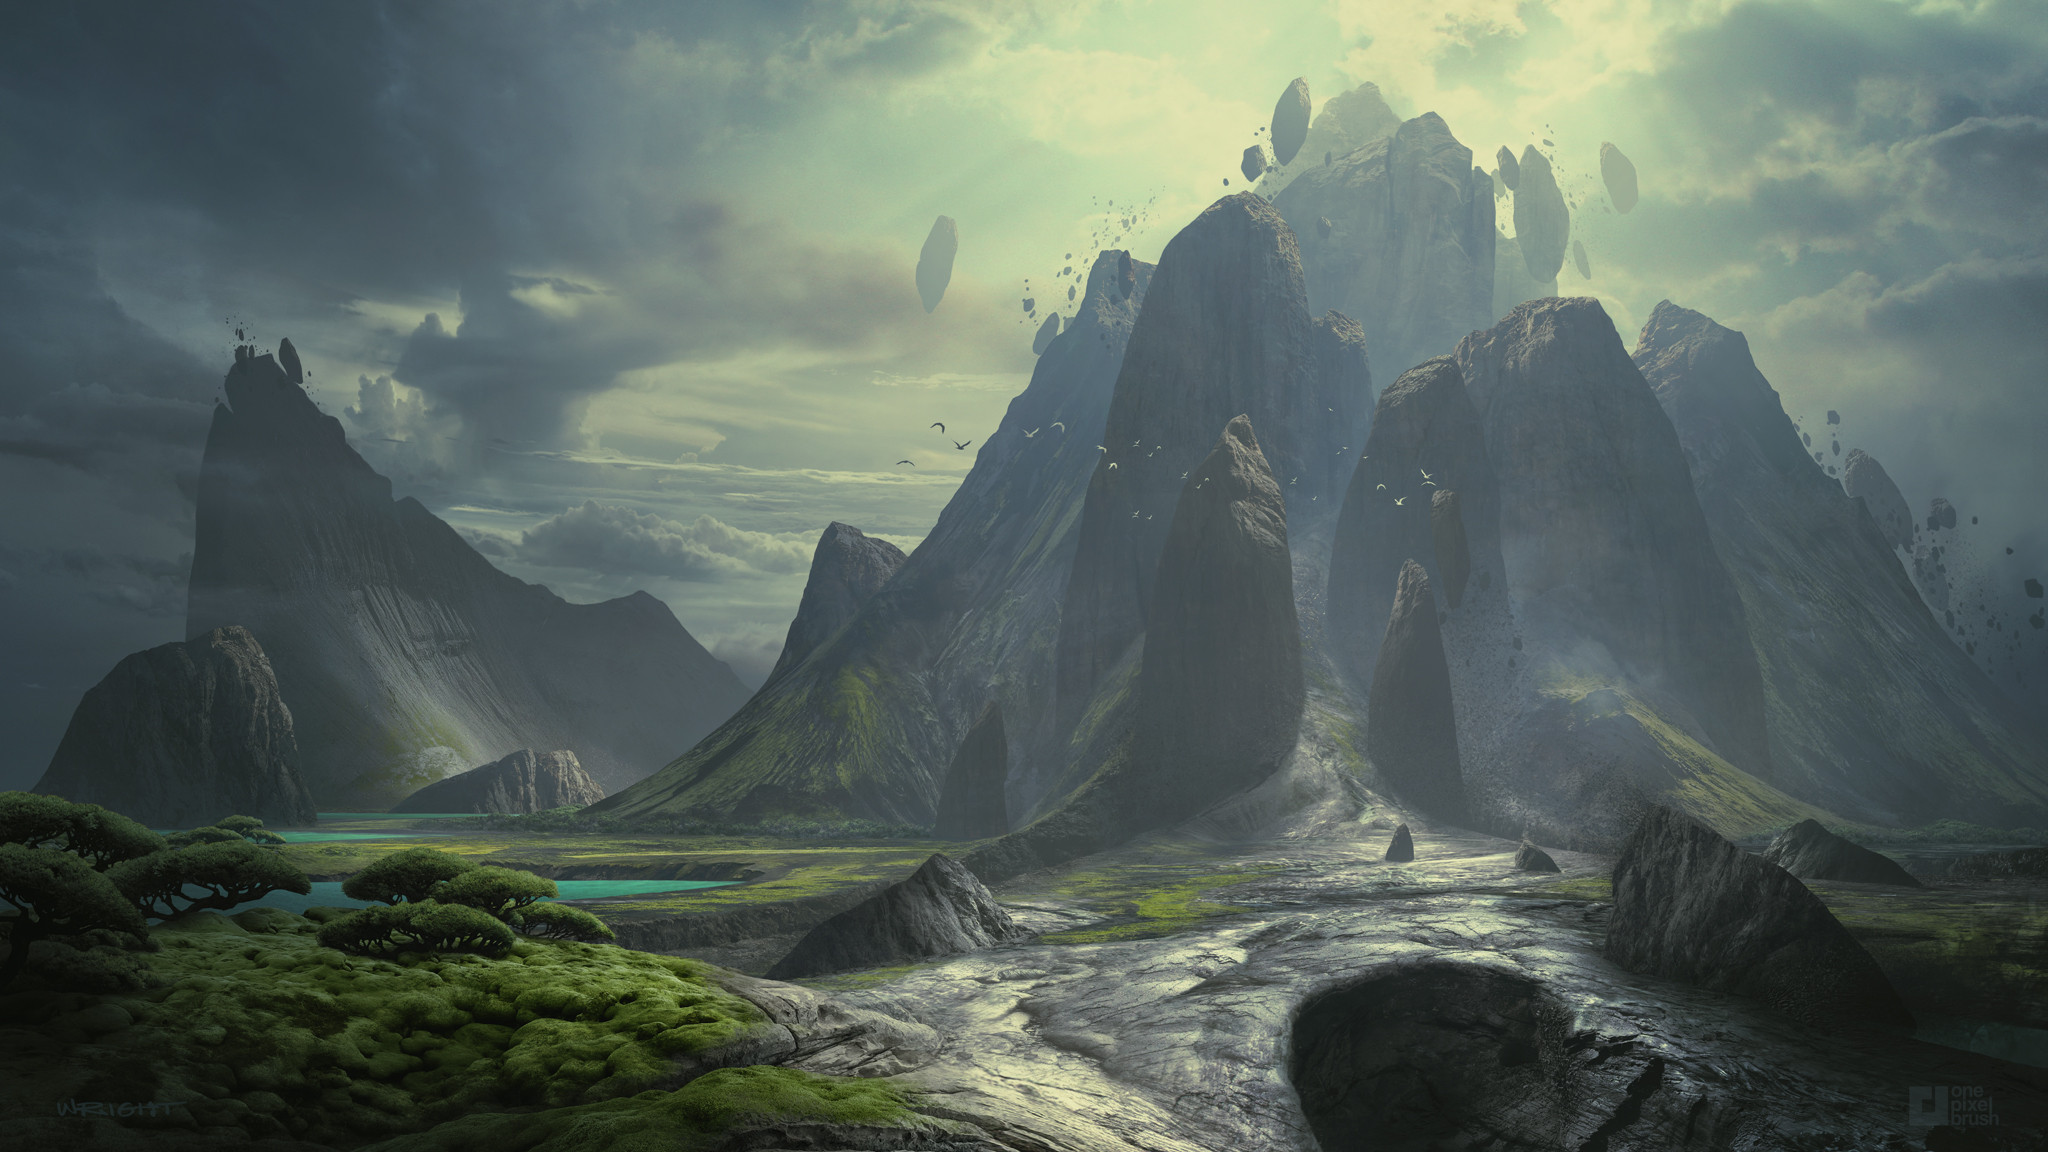 General 2048x1152 artwork digital art concept art mountains trees grass sky clouds rocks birds Mass Effect: Andromeda Richard Wright